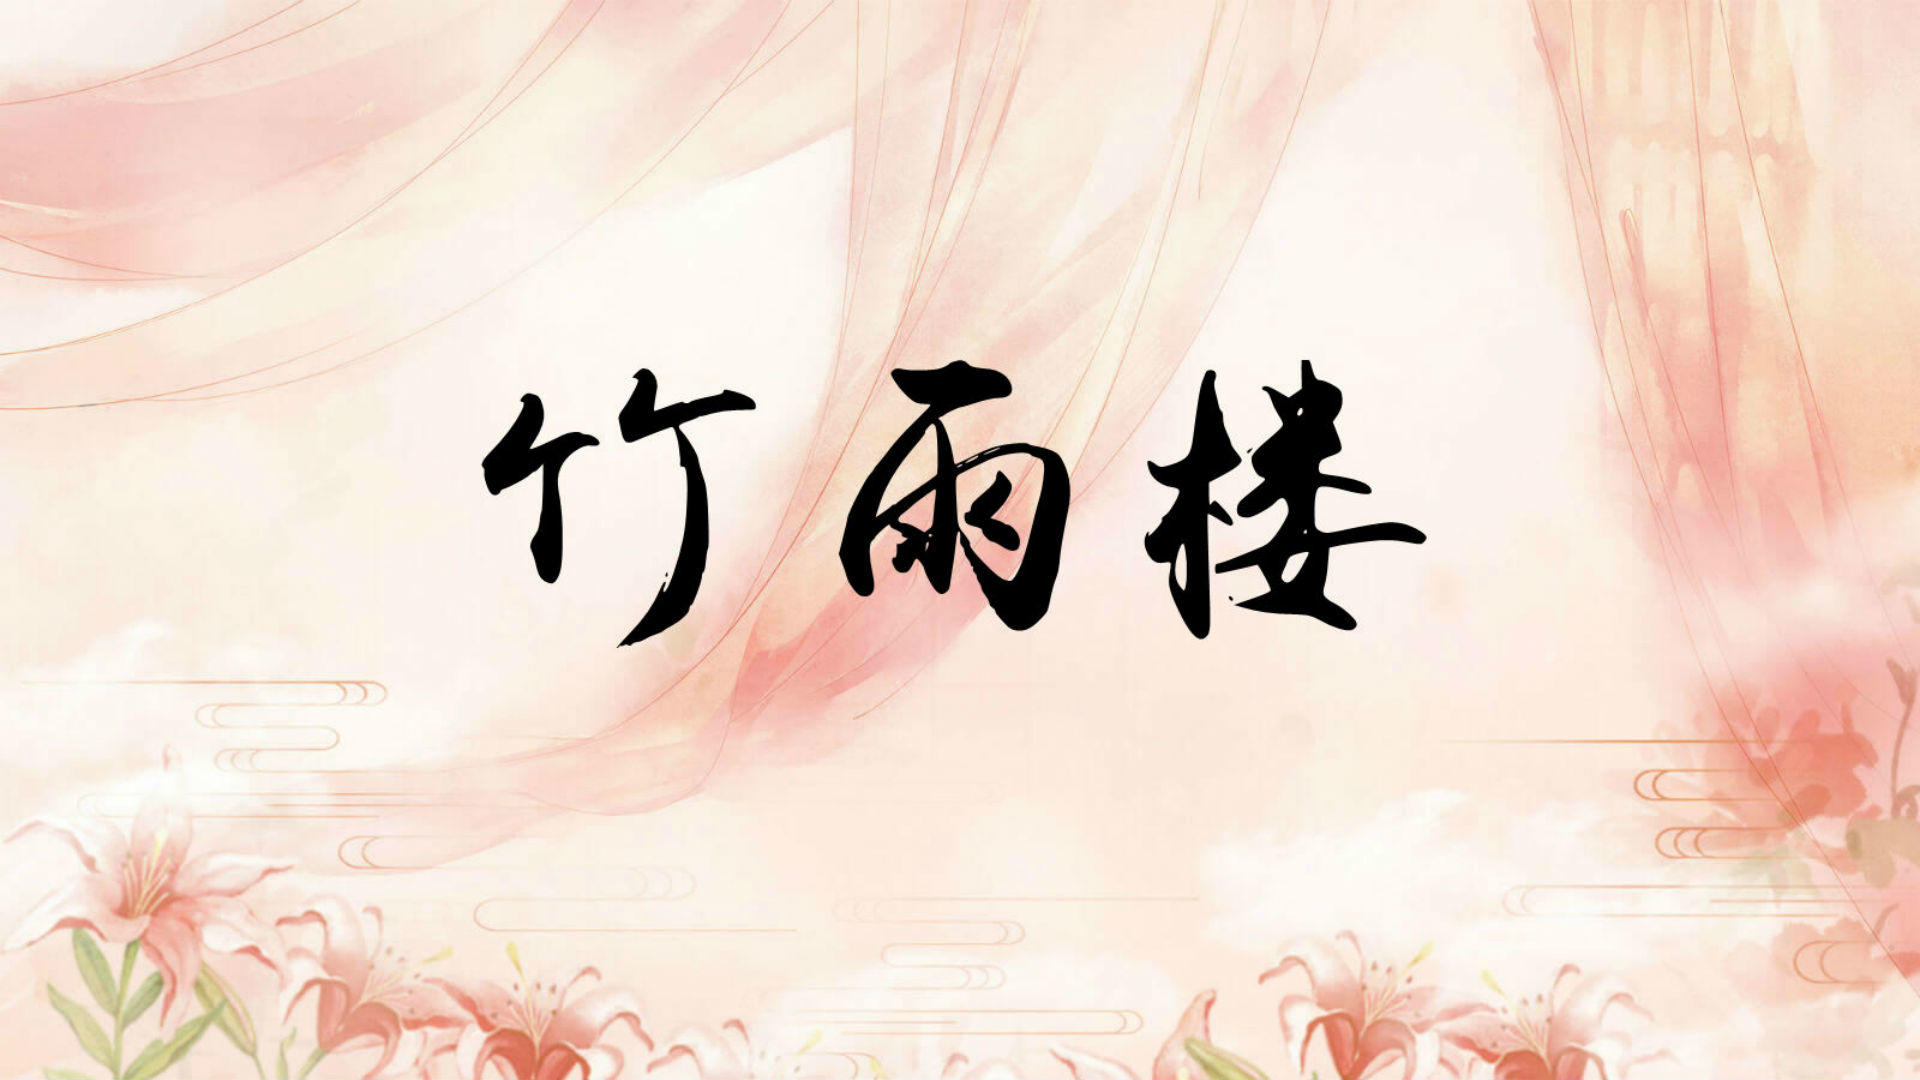 Banner of 주율루 